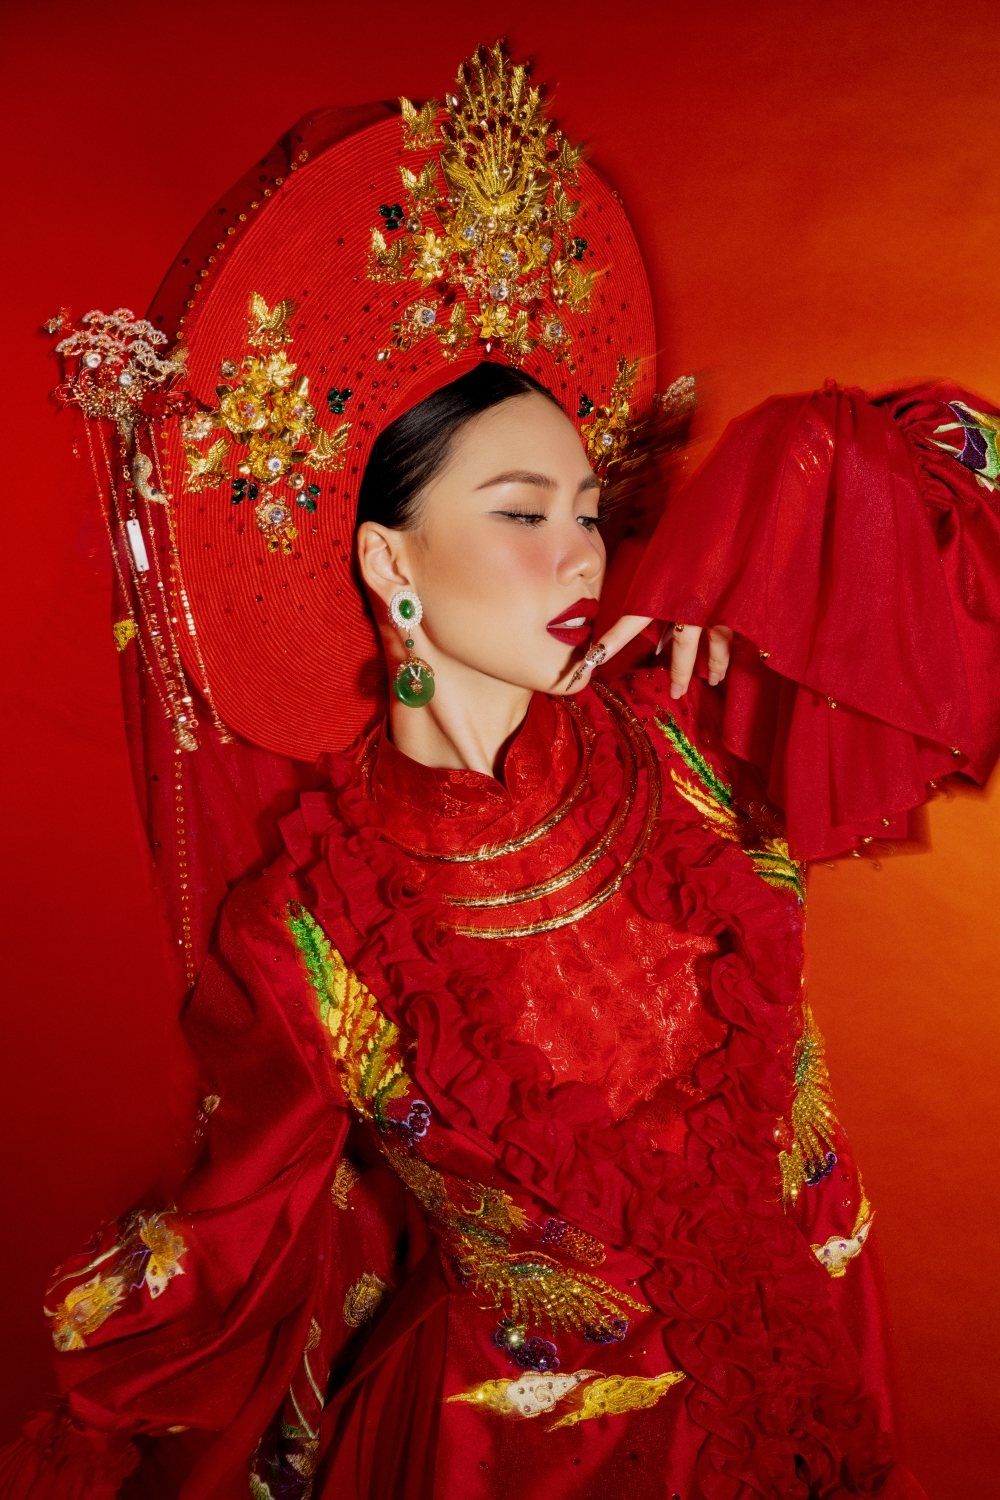 Bộ trang phục dân tộc này sẽ được hoa hậu Bùi Quỳnh Hoa trình diễn tại cuộc thi Miss Universe 2023, góp phần tôn vinh, lan tỏa nghi lễ hầu đồng đậm đà bản sắc dân tộc của người Việt Nam.  